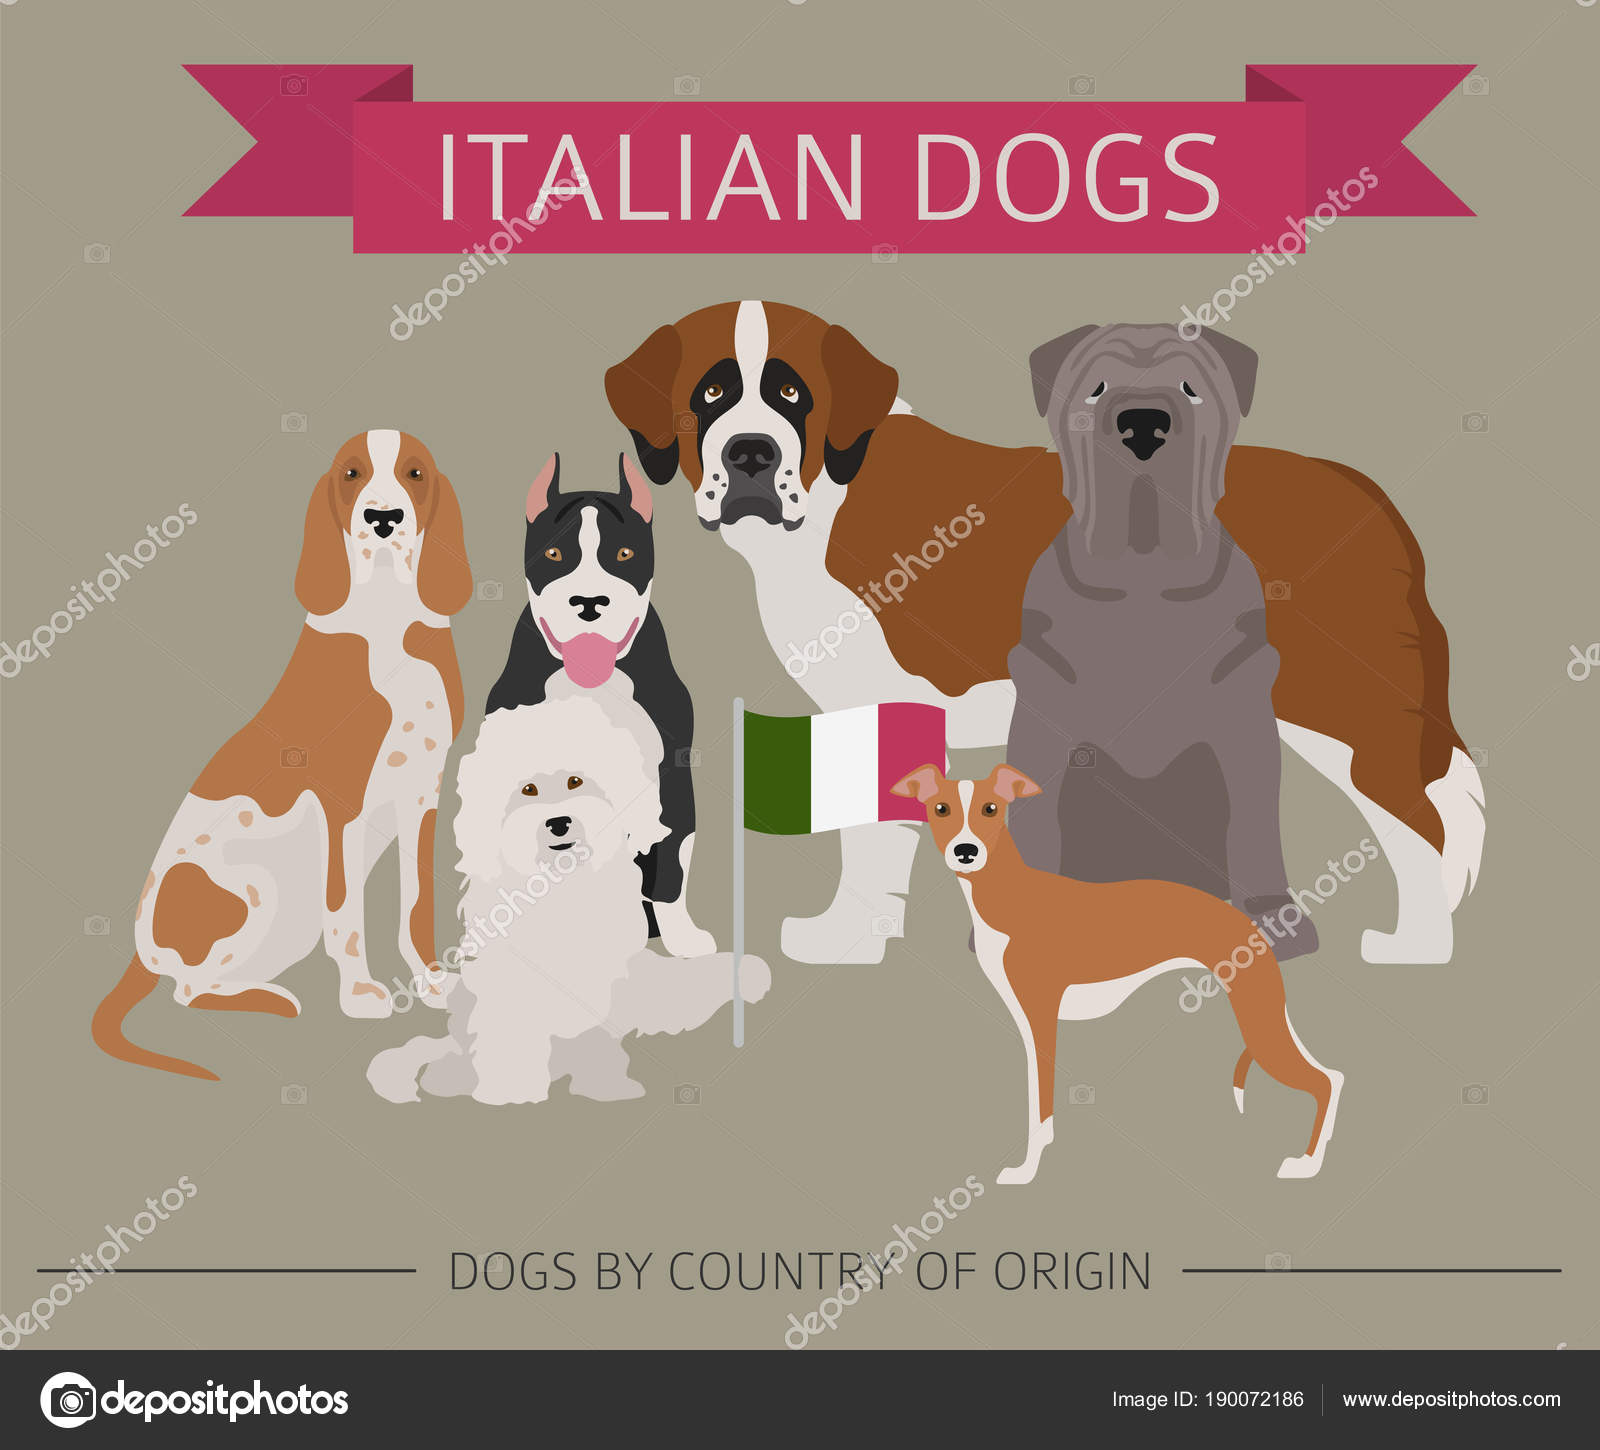 Italian dogging